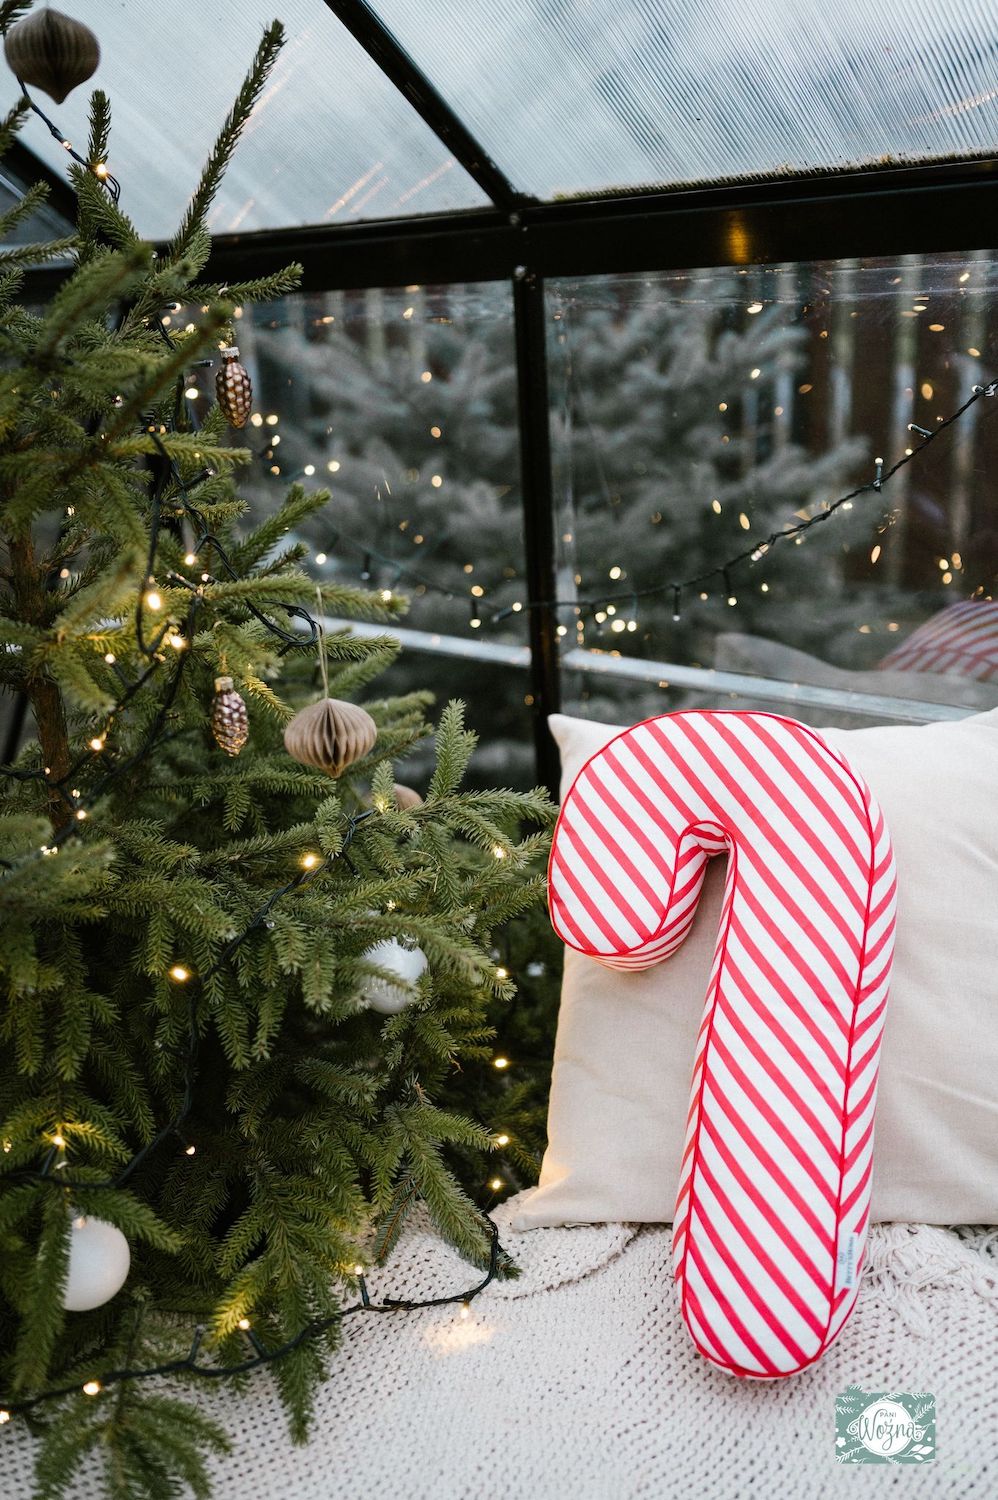 świąteczna poduszka laska w biało czerwone paski od Bettys Home dekoracja w szklarni na fotelu